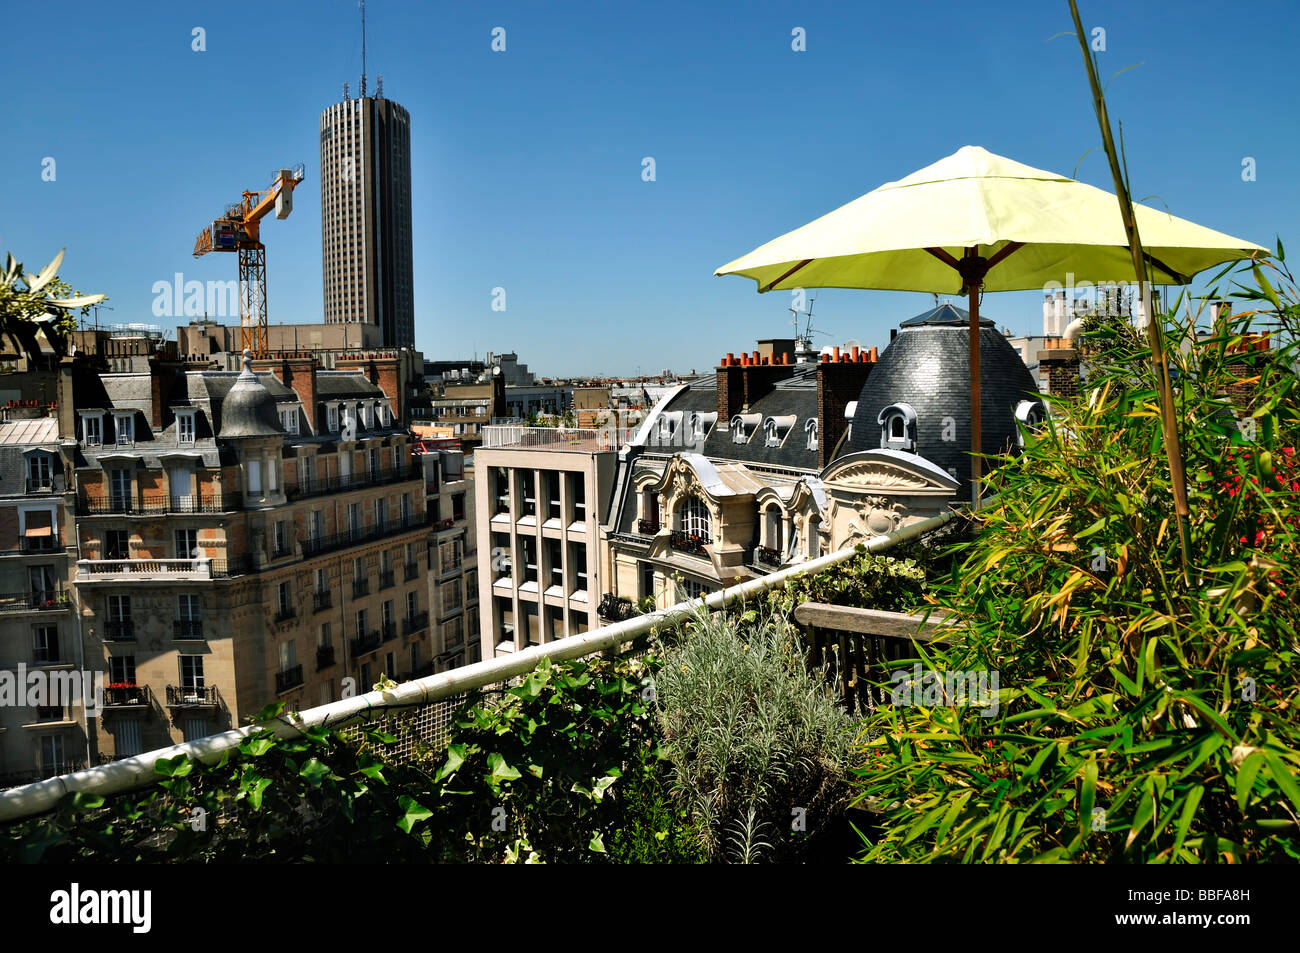 View from our balcony - Picture of Hôtel Barrière Fouquet's Paris